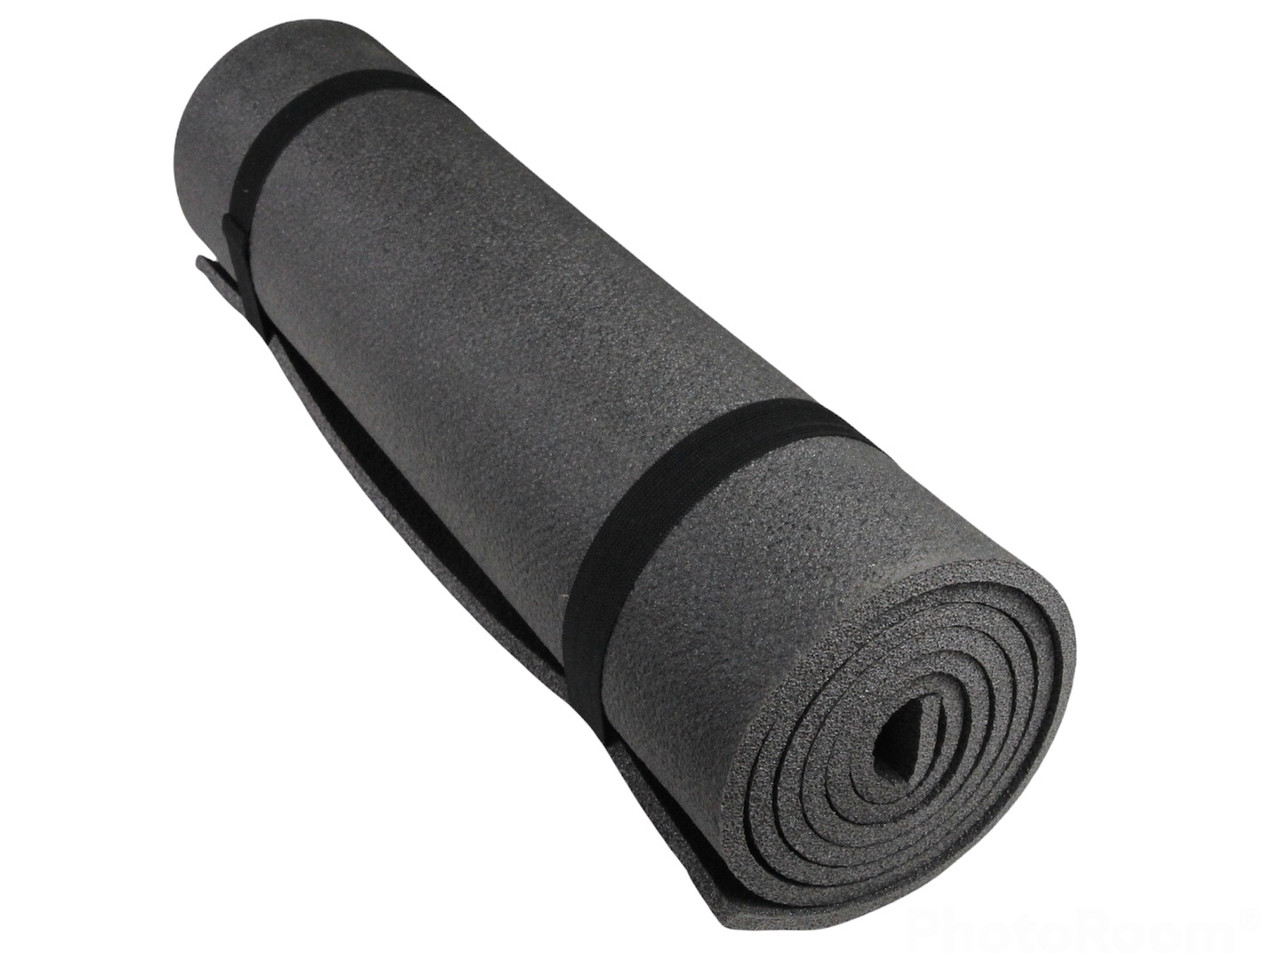 Коврик для фитнеса и йоги COMFORT 8, серый, толщина 8мм, ширина 75см детальная фотка